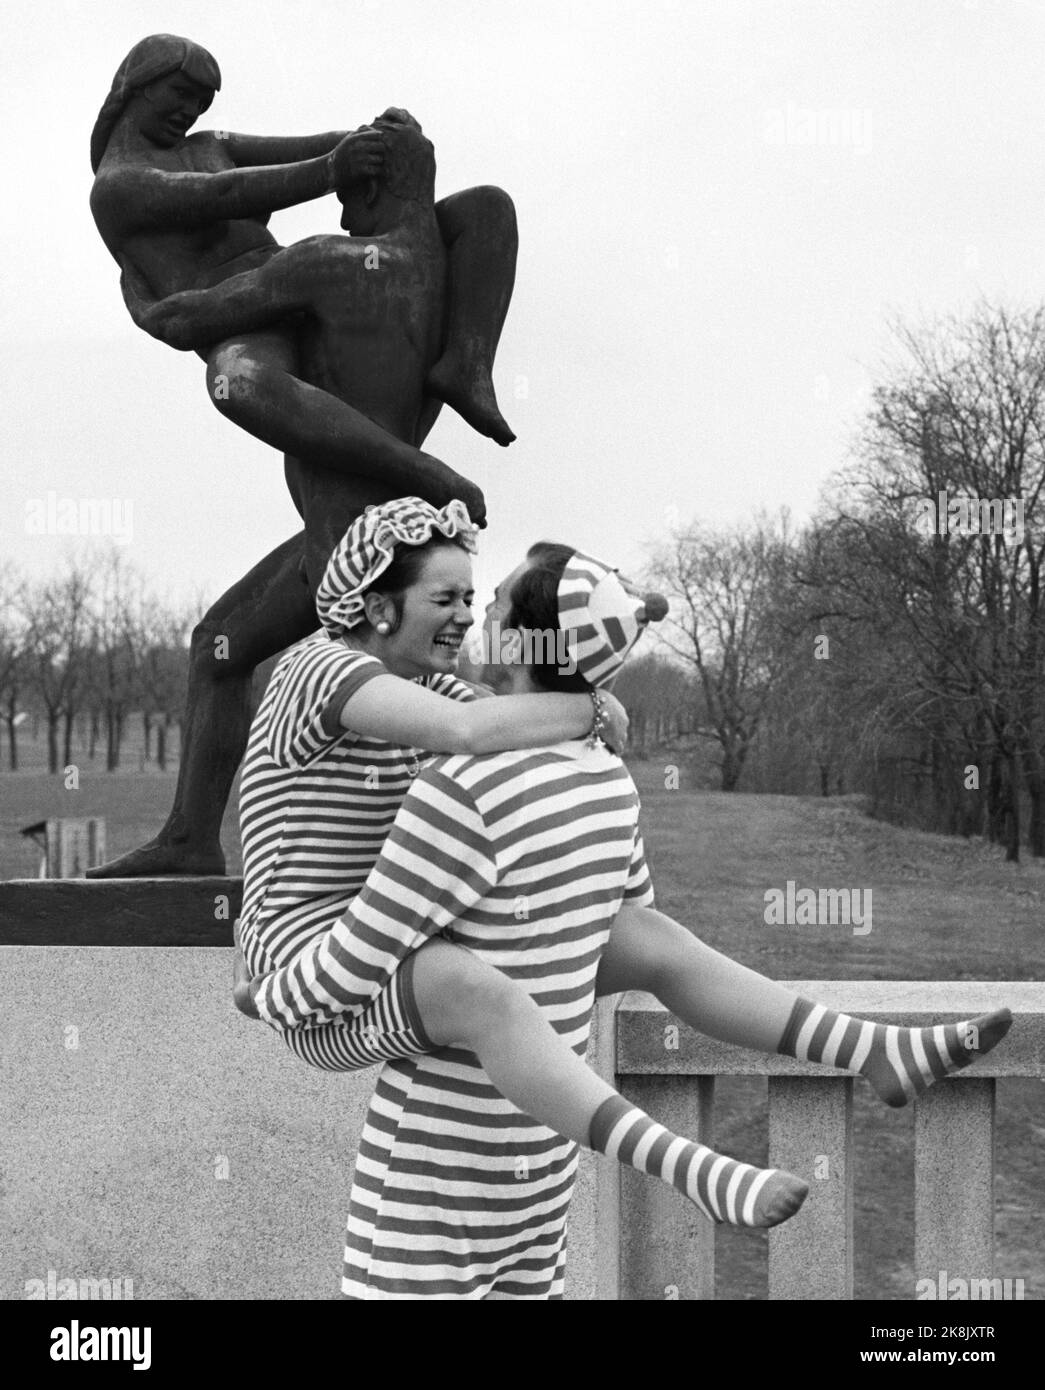 Oslo 19690510: Mujer joven y hombre usando un traje de baño de estilo retro.  Esta moda de traje de baño es de alrededor de la década de 1920s, pero  estalló de nuevo